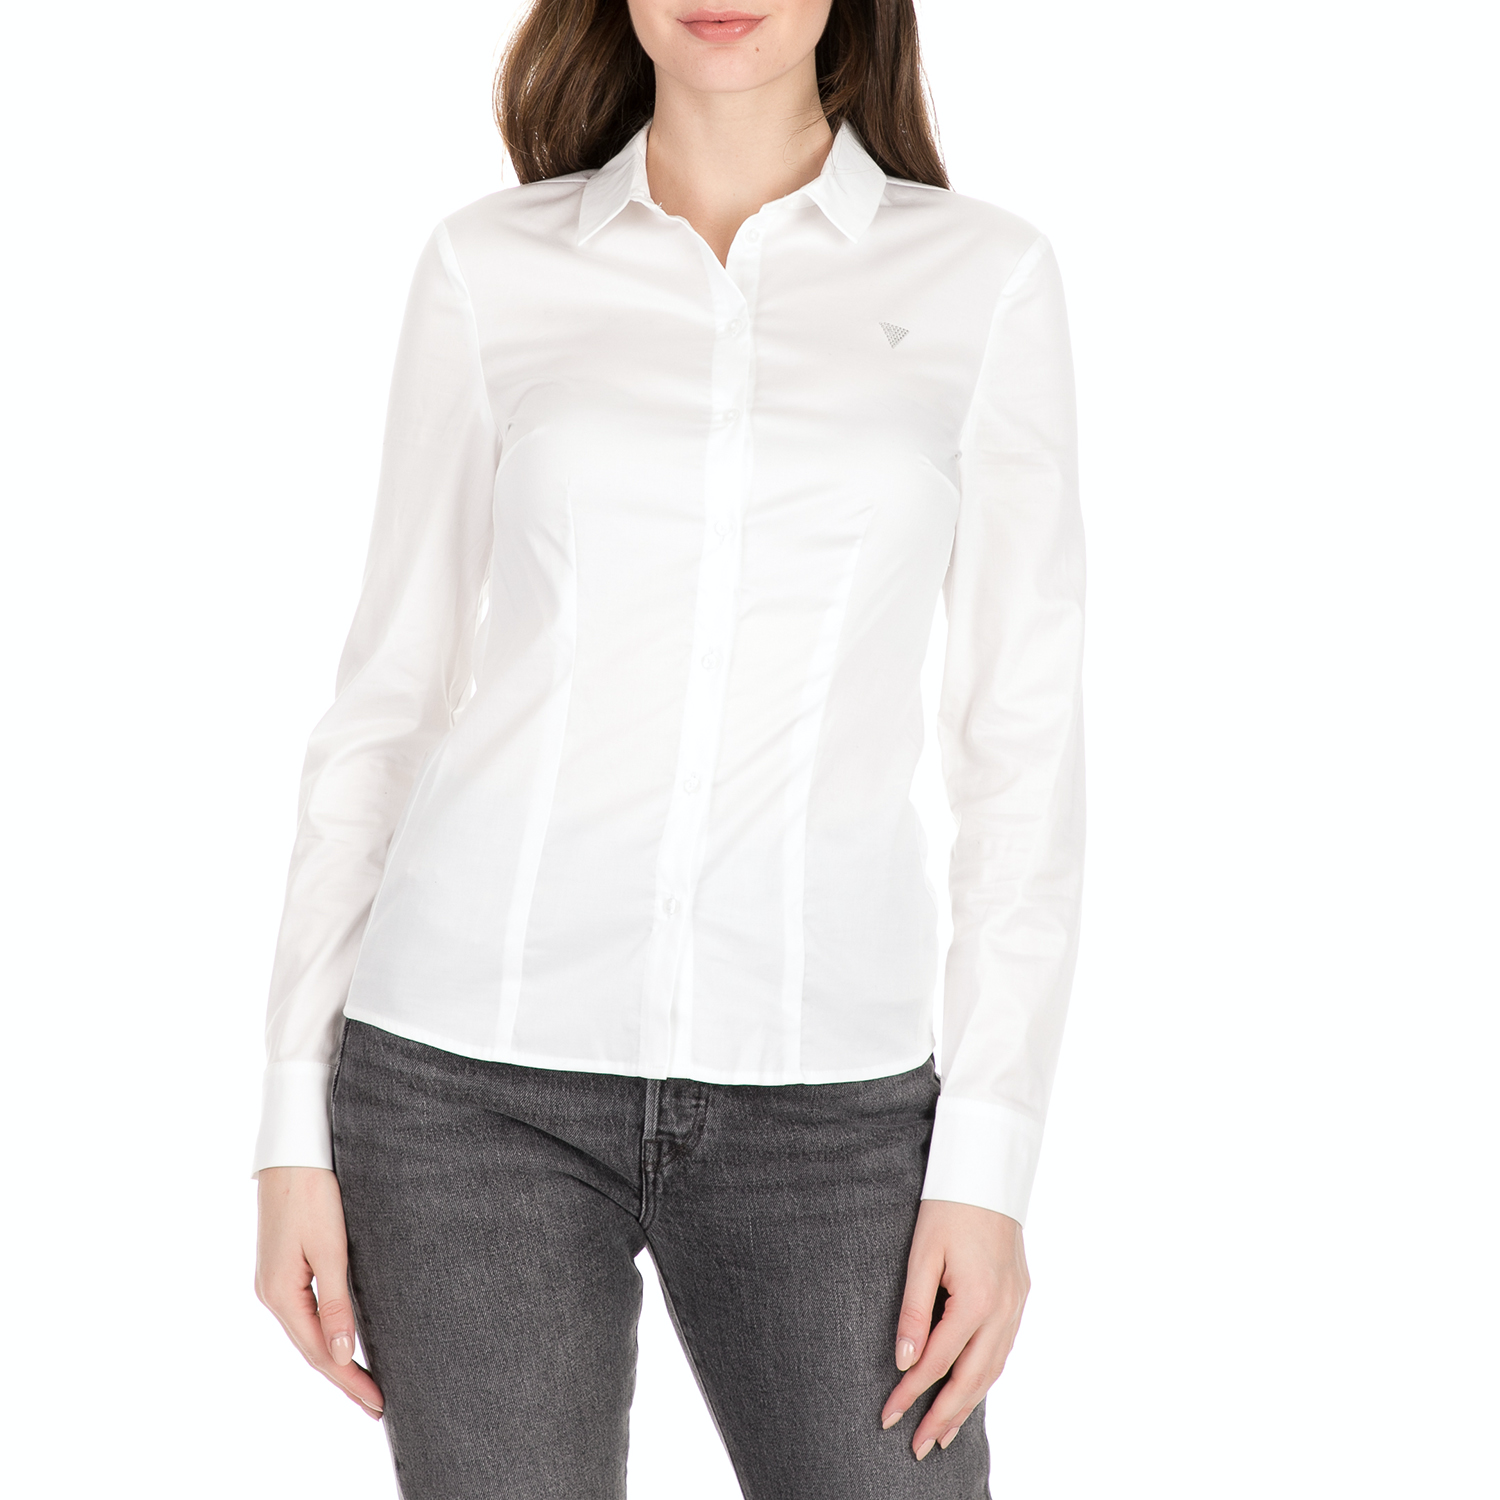 Γυναικεία/Ρούχα/Πουκάμισα/Μακρυμάνικα GUESS - Γυναικείο πουκάμισο GUESS CATE λευκό